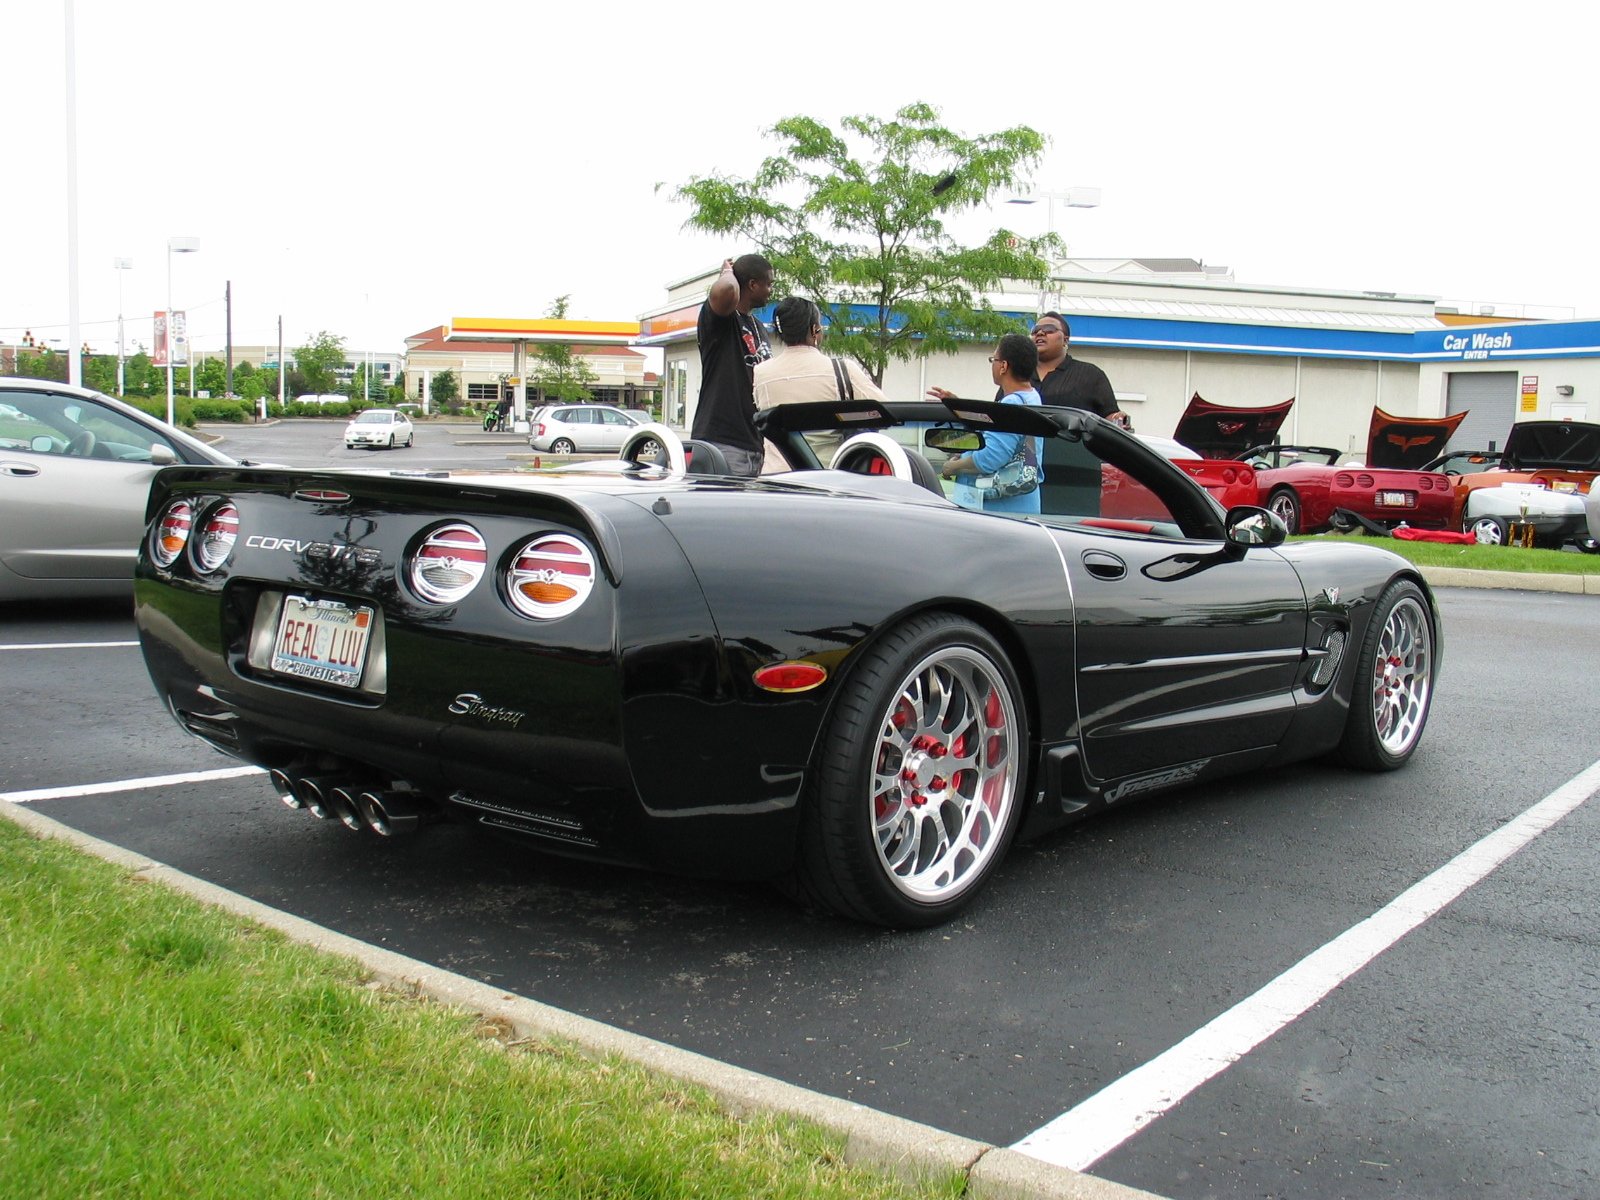 1997, 04, C, 5, Chevrolet, Corvette, Coupe, Convertible, Muscle, Supercar Wallpaper